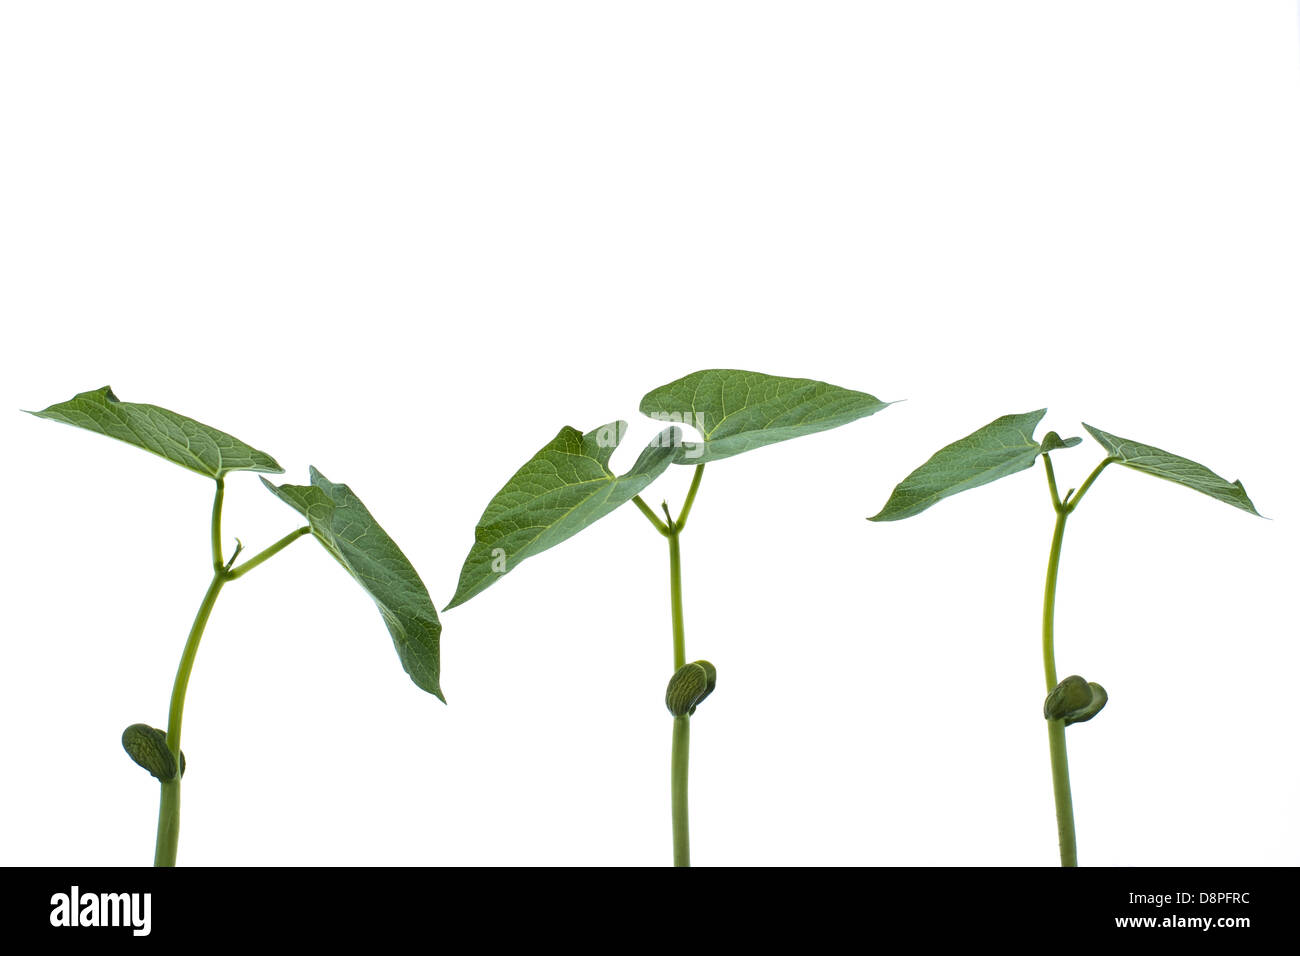 In der Nähe von 3 jungen Barlotti Bohnen Triebe oder Pflanzen auf einem weißen Hintergrund. Stockfoto